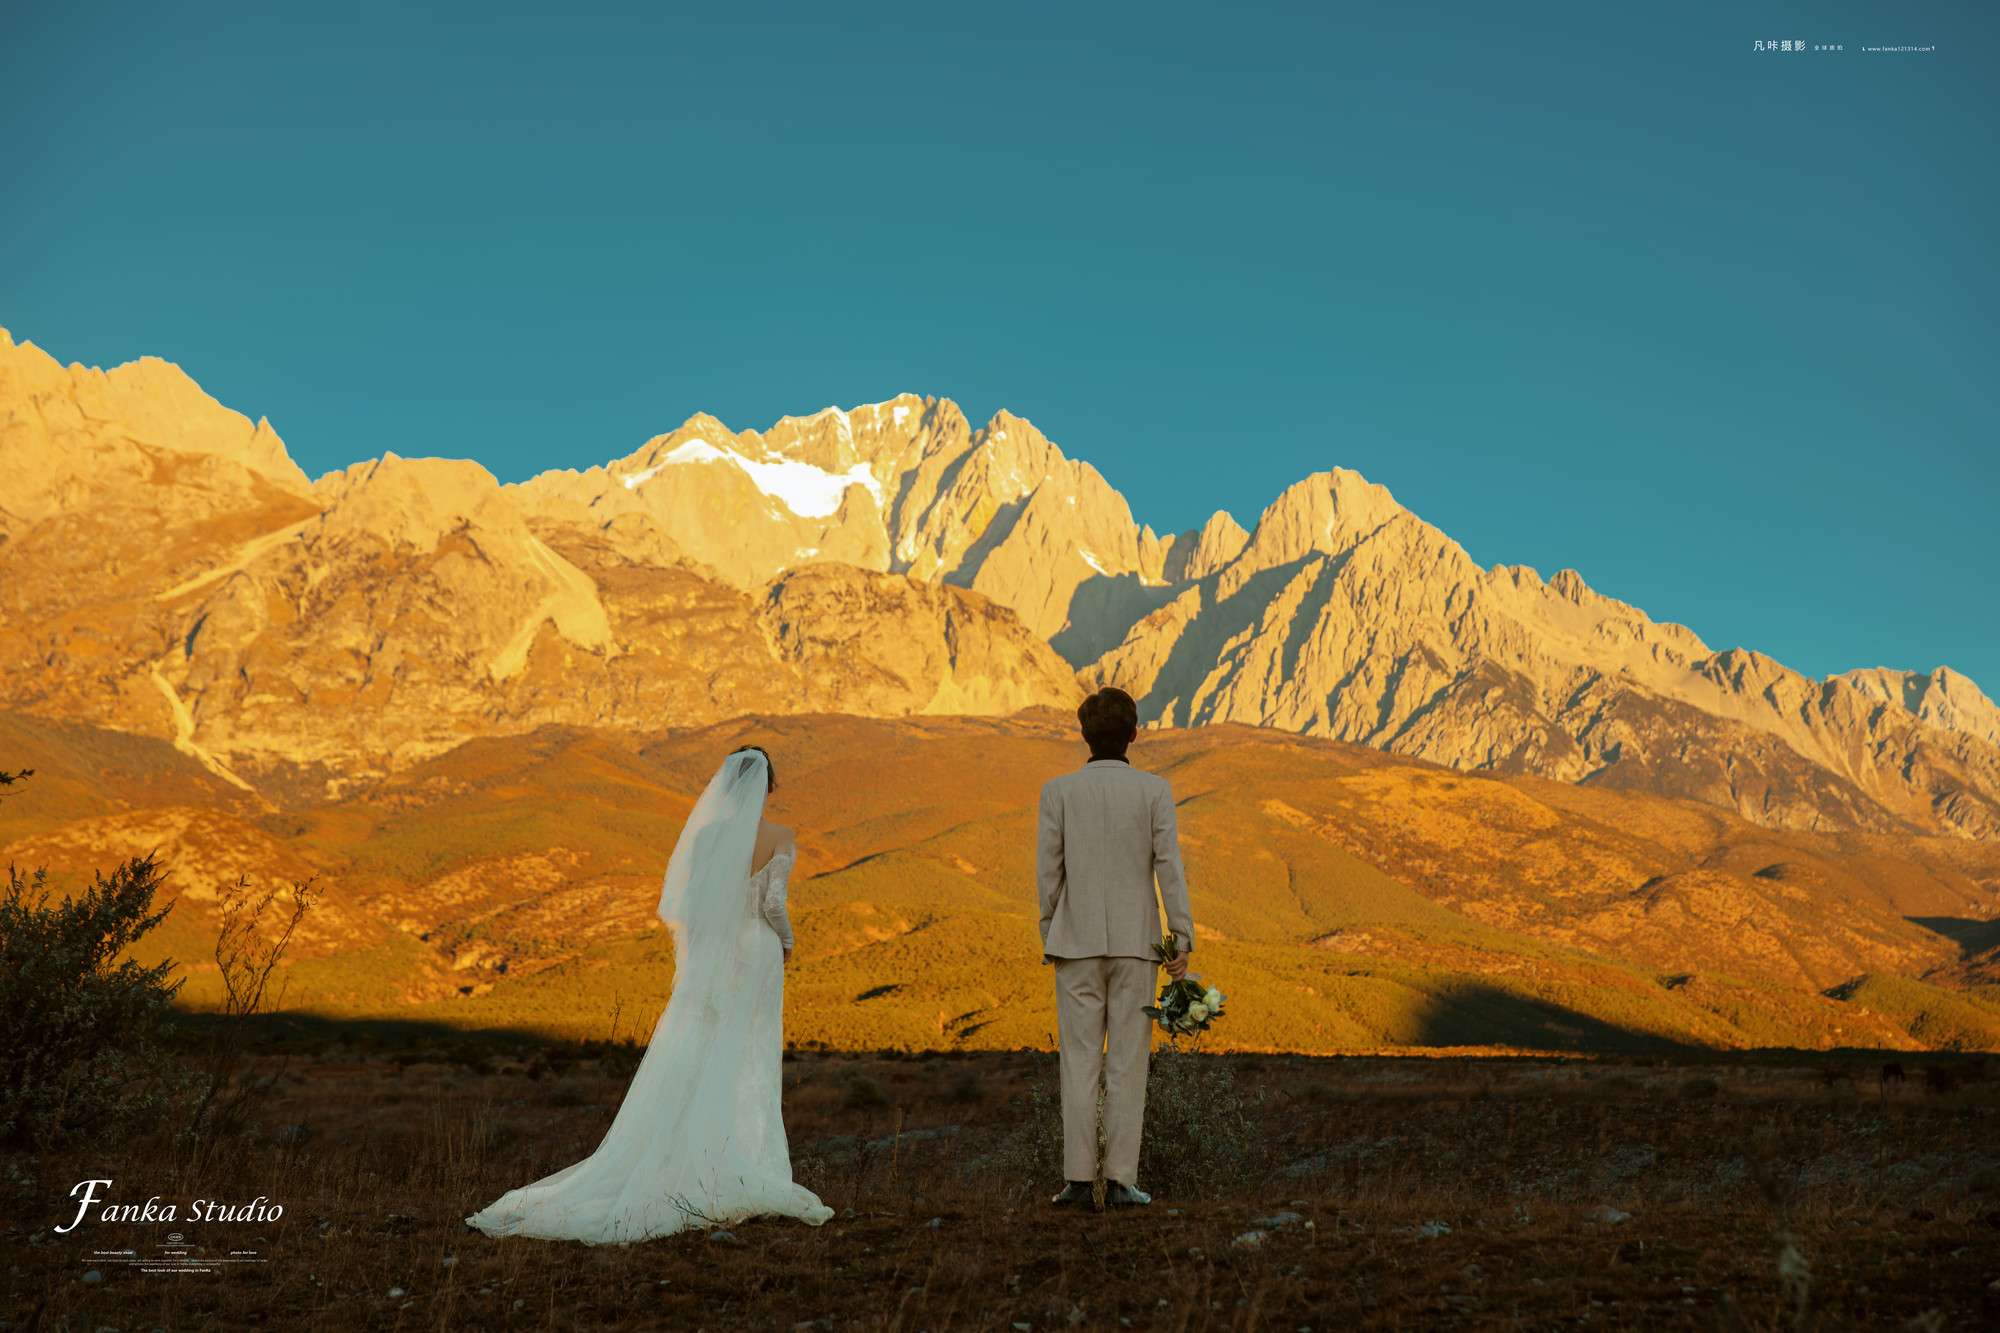 凡咔摄影全球旅拍 的想法: 丽江日照金山婚纱照分享 听说看到日照金